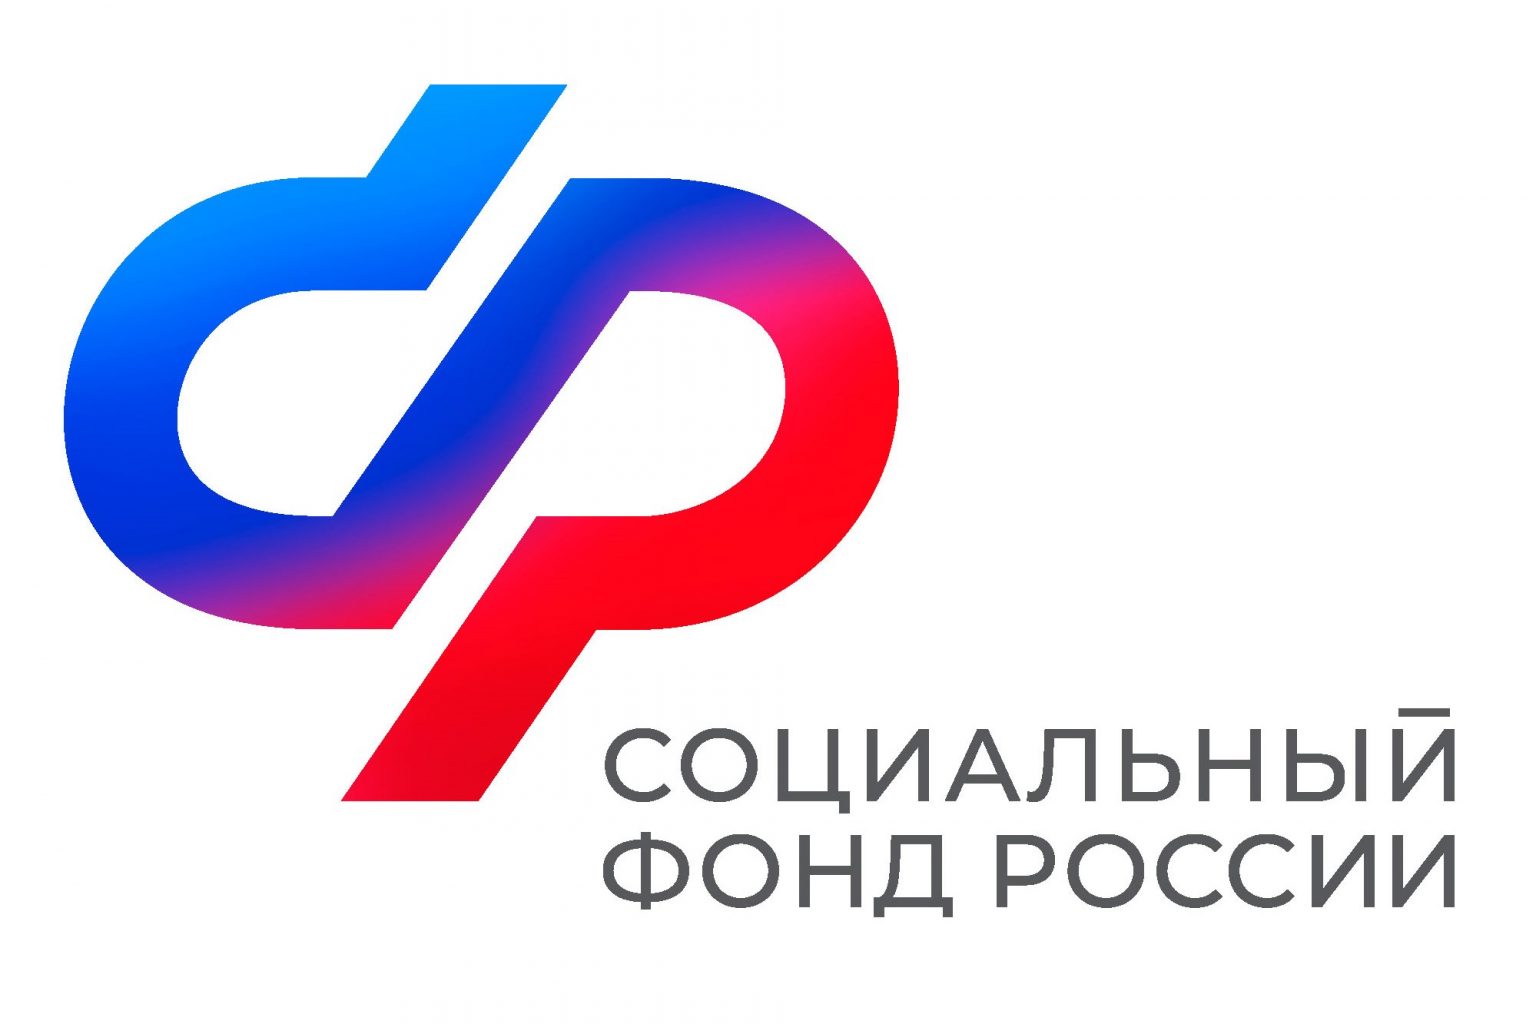 Отделение СФР по Курской области напоминает: до 15 апреля работодателям необходимо подтвердить основной вид экономической деятельности.